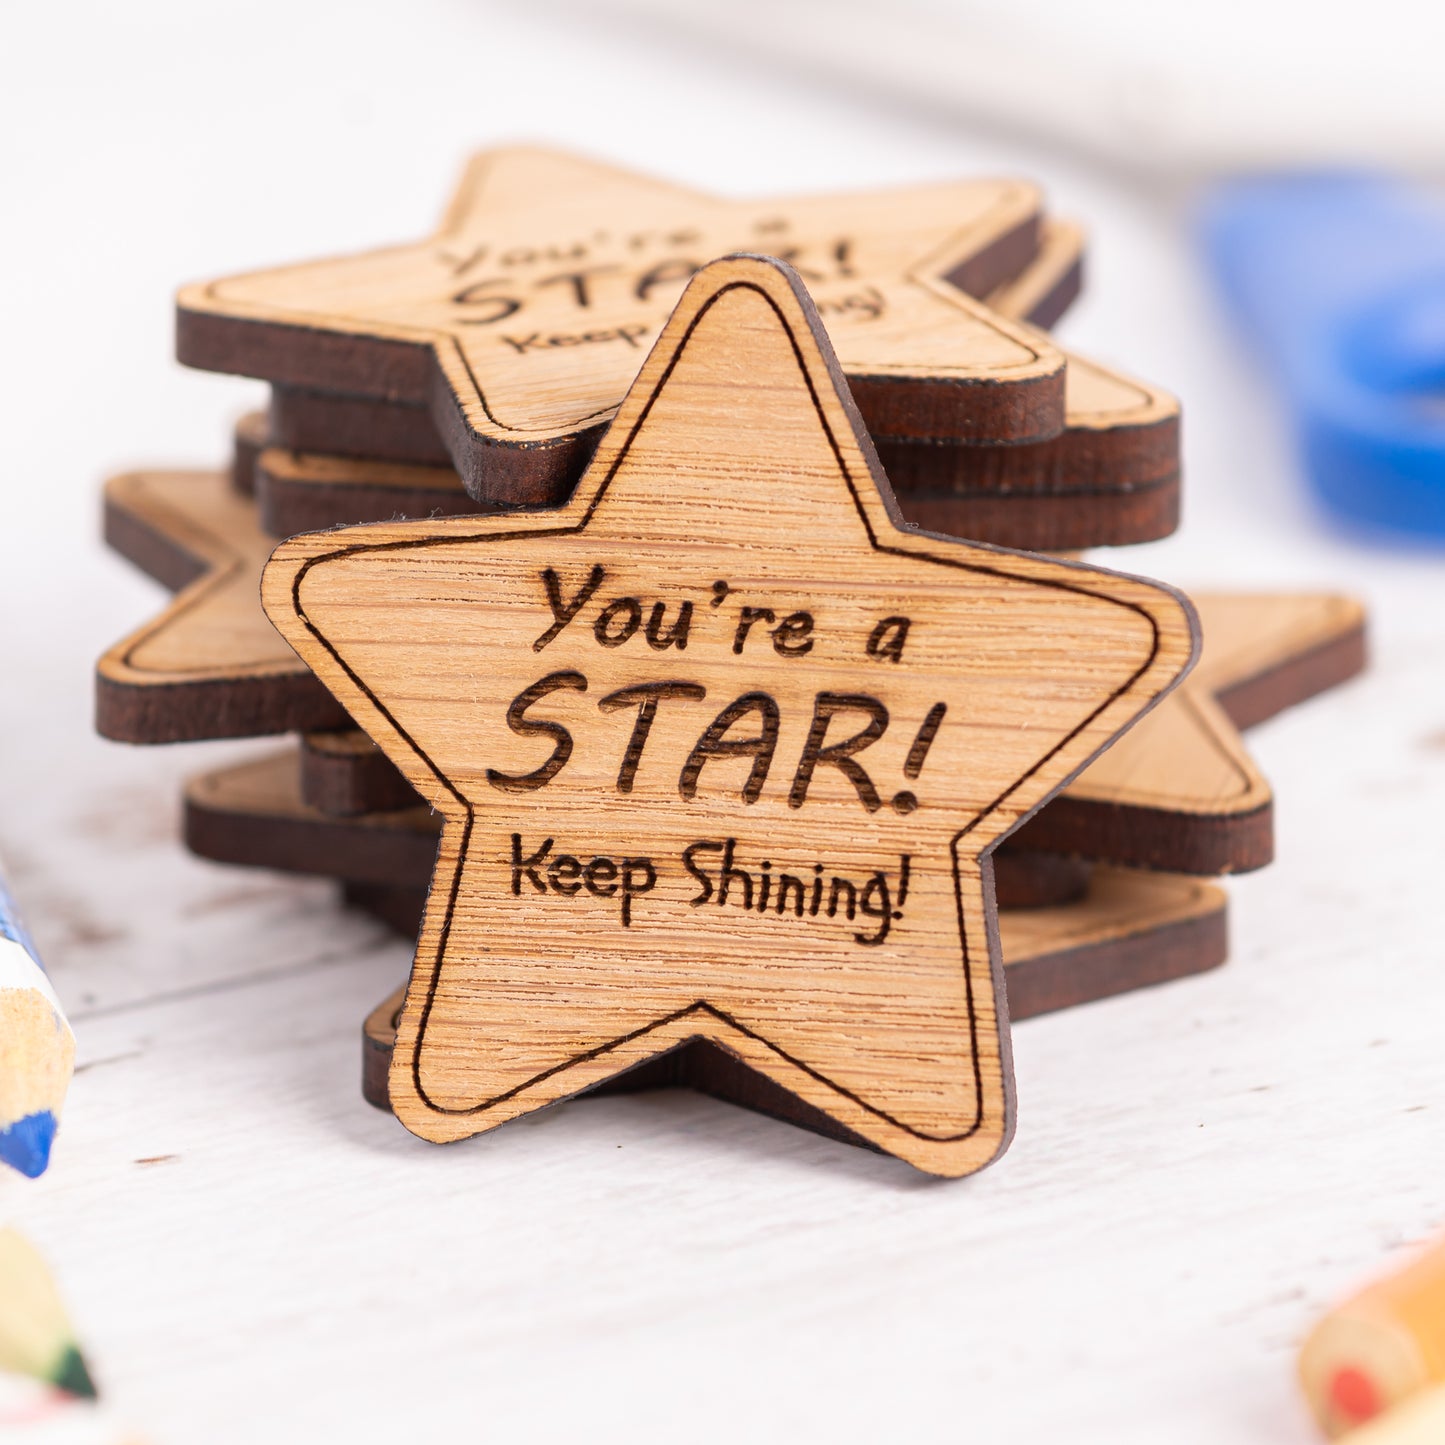 Wooden Star Fridge Magnets - Christmas Gift For Pupils From Teacher